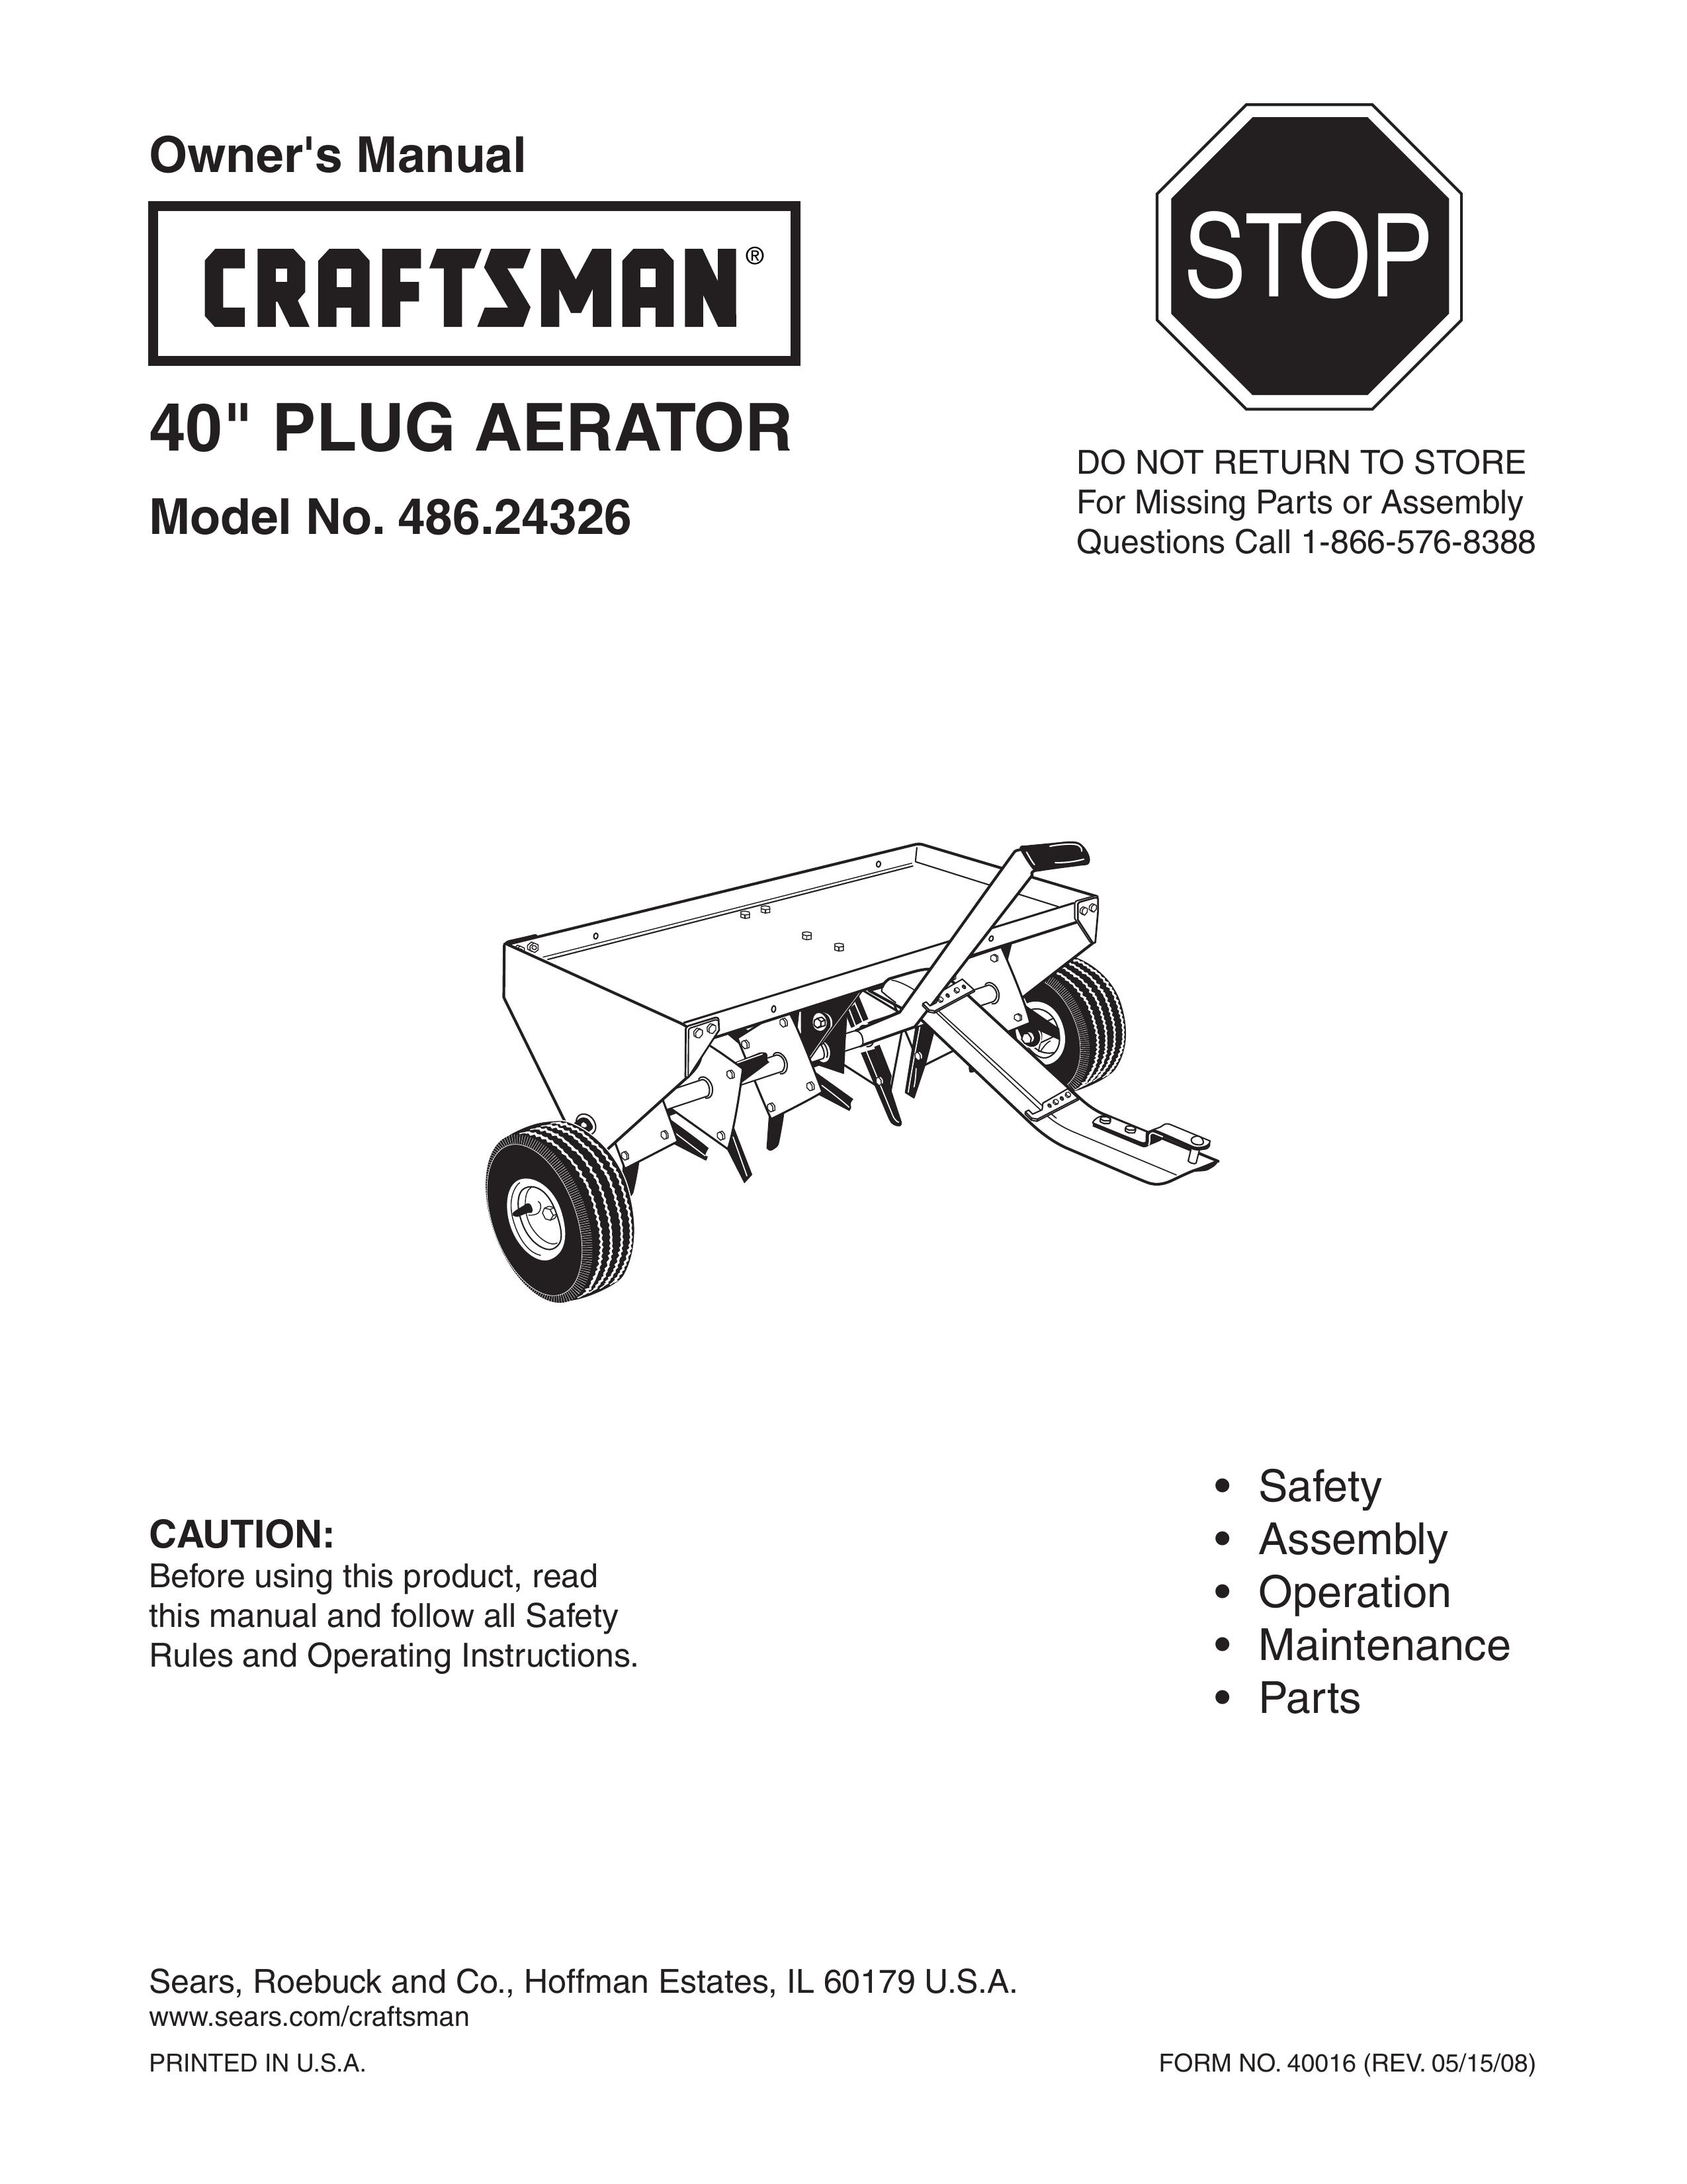 Craftsman 486.24326 Lawn Aerator User Manual